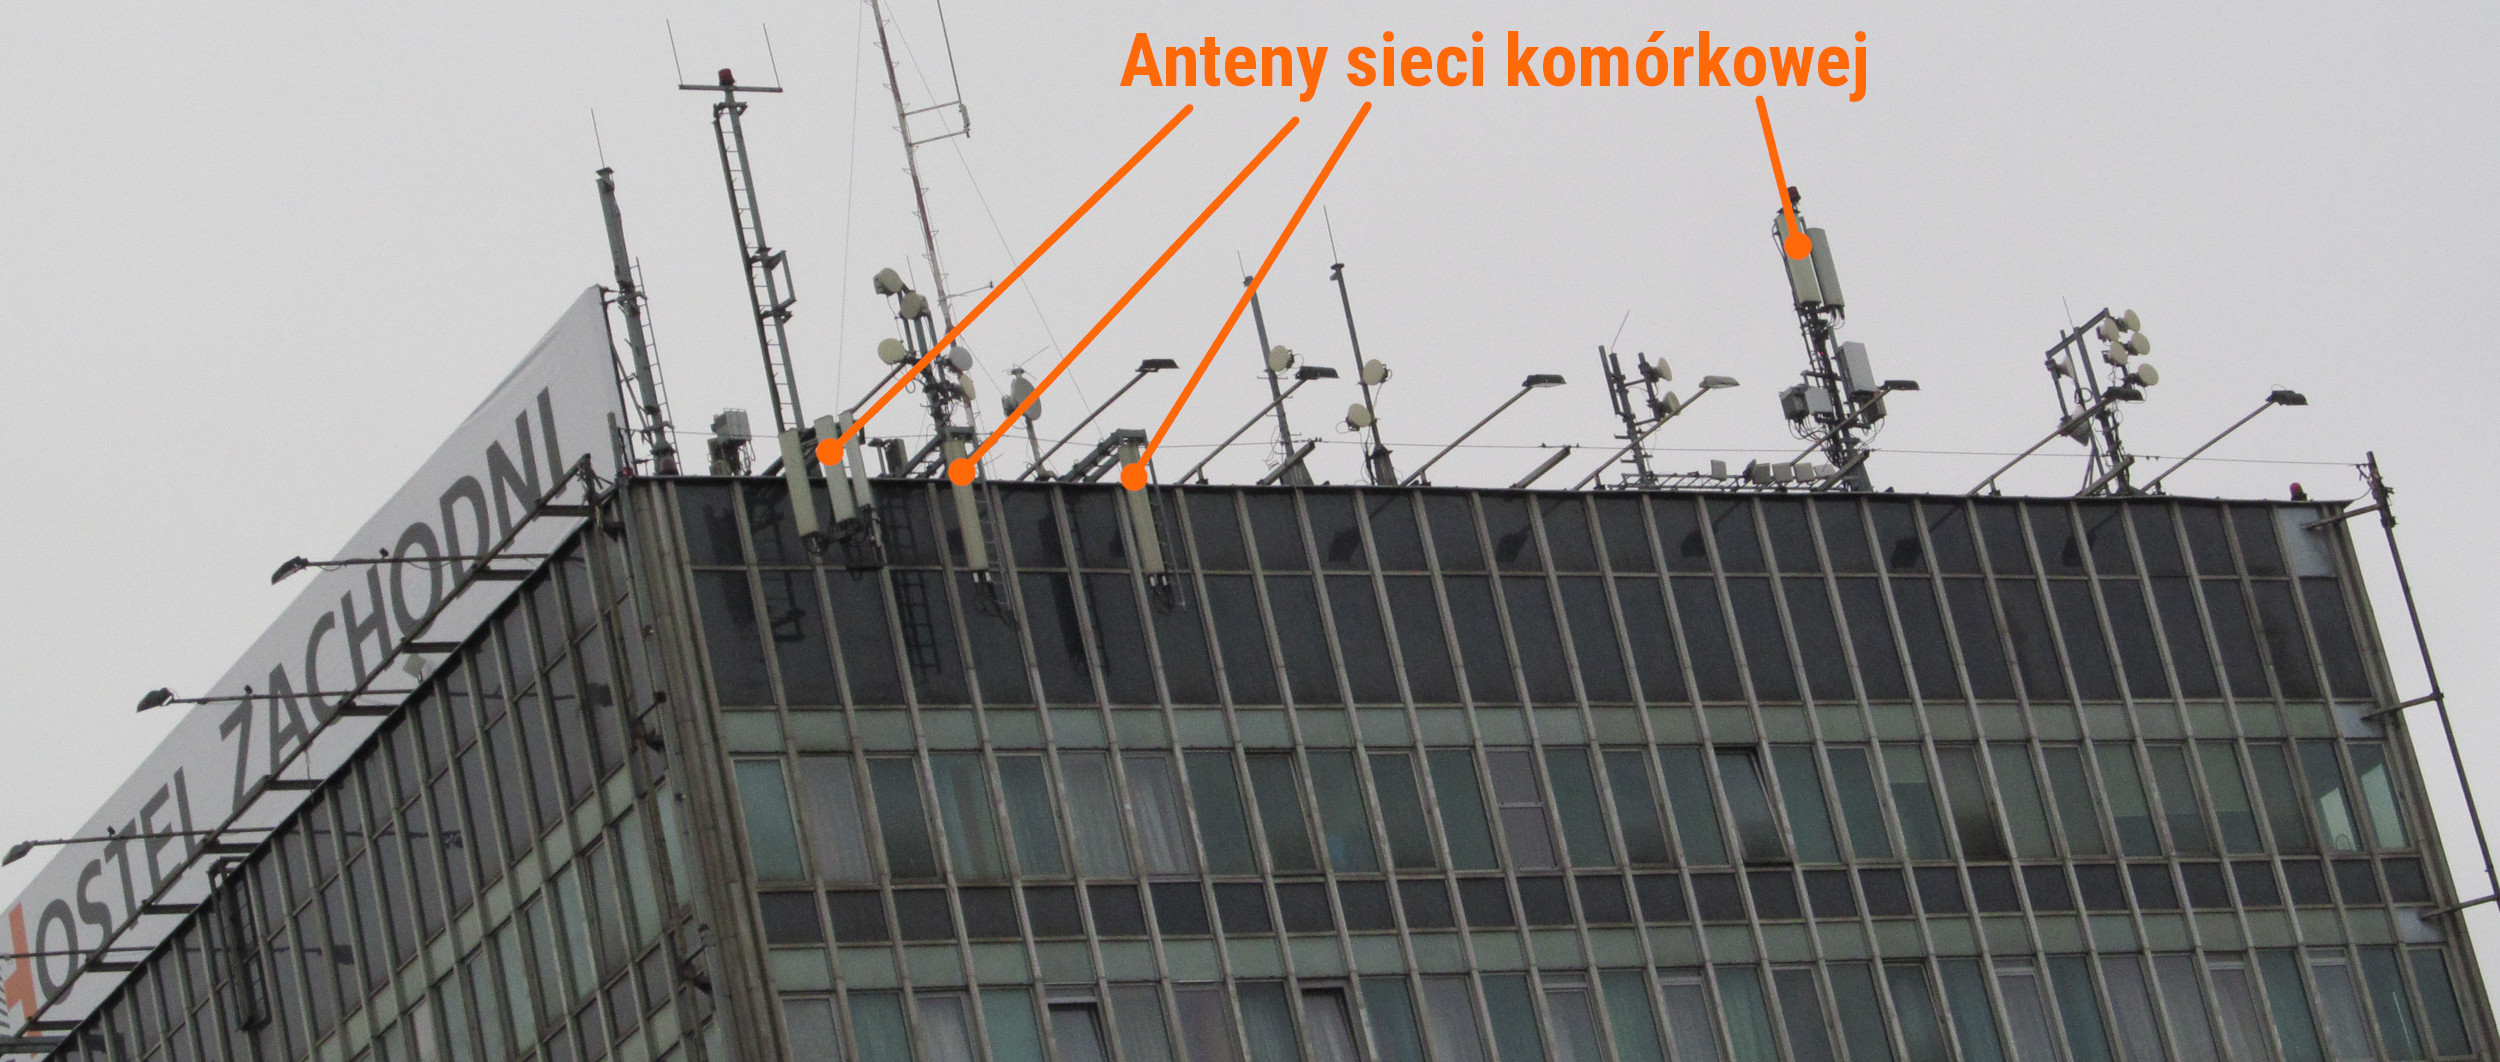 Anteny sieci GSM na dachu dworca autobusowego "Warszawa Zachodnia"